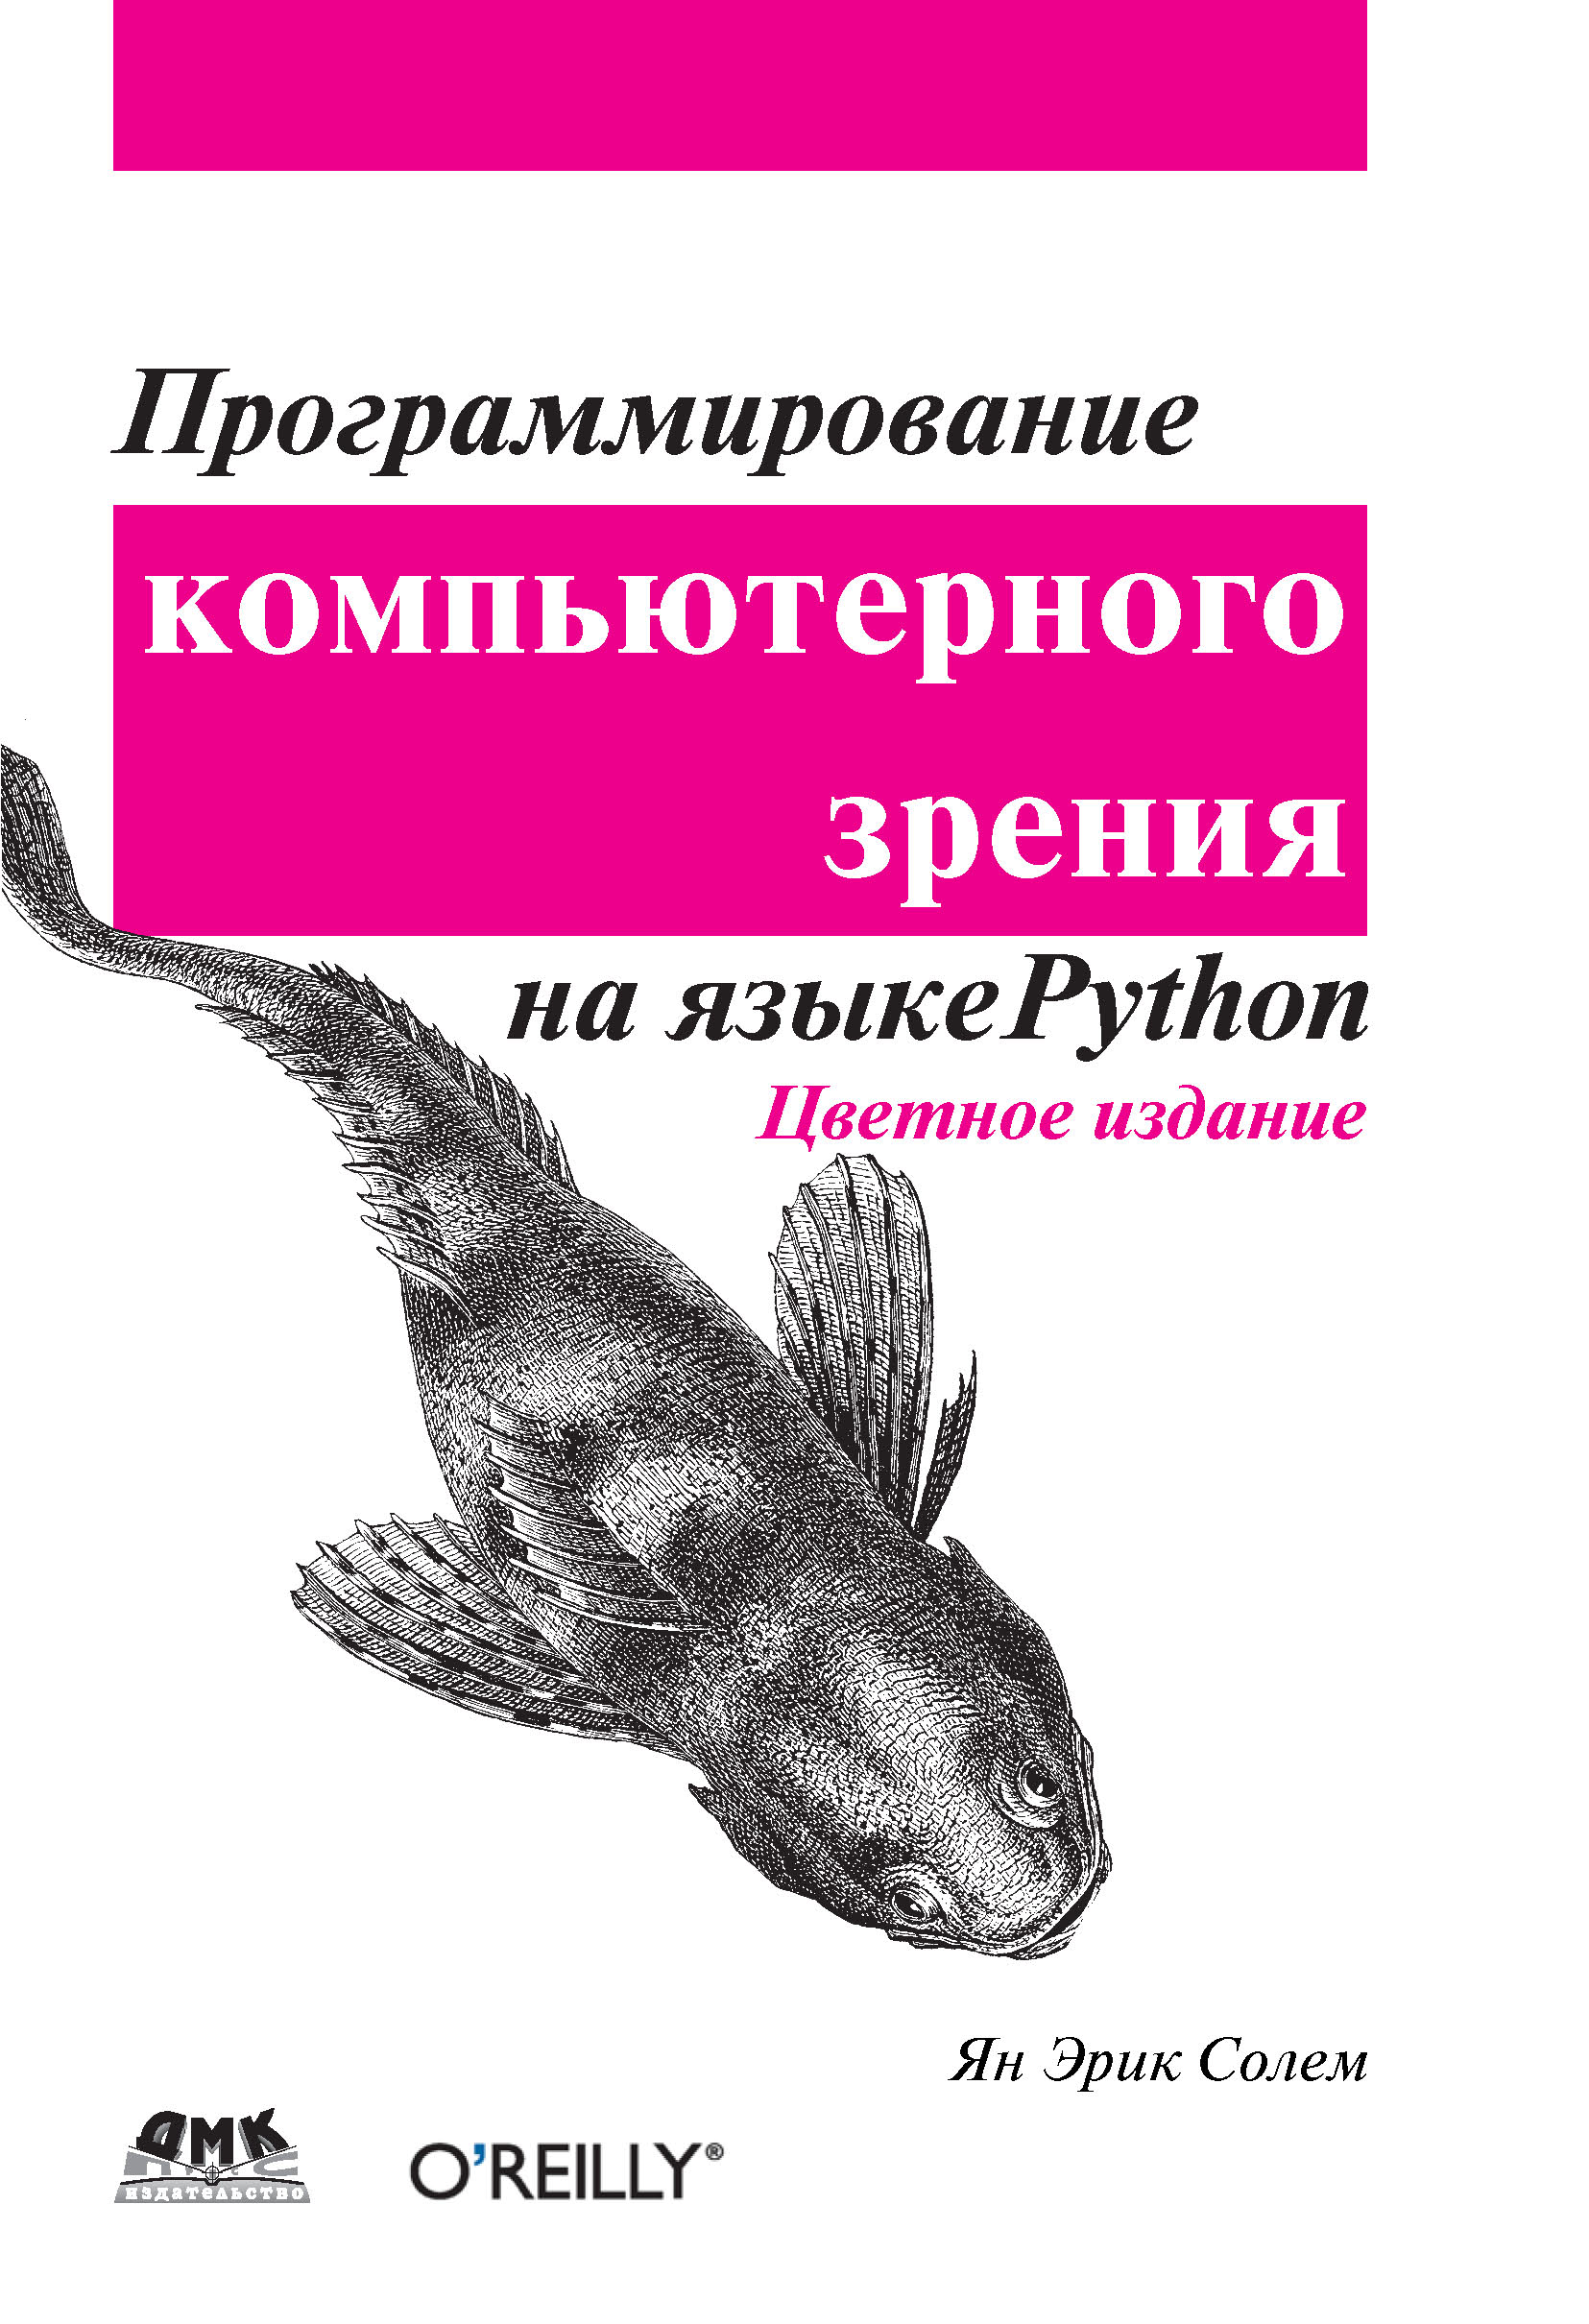 Книга  Программирование компьютерного зрения на языке Python созданная Ян Эрик Солем, А. А. Слинкин может относится к жанру зарубежная компьютерная литература, программирование. Стоимость электронной книги Программирование компьютерного зрения на языке Python с идентификатором 22879946 составляет 559.00 руб.